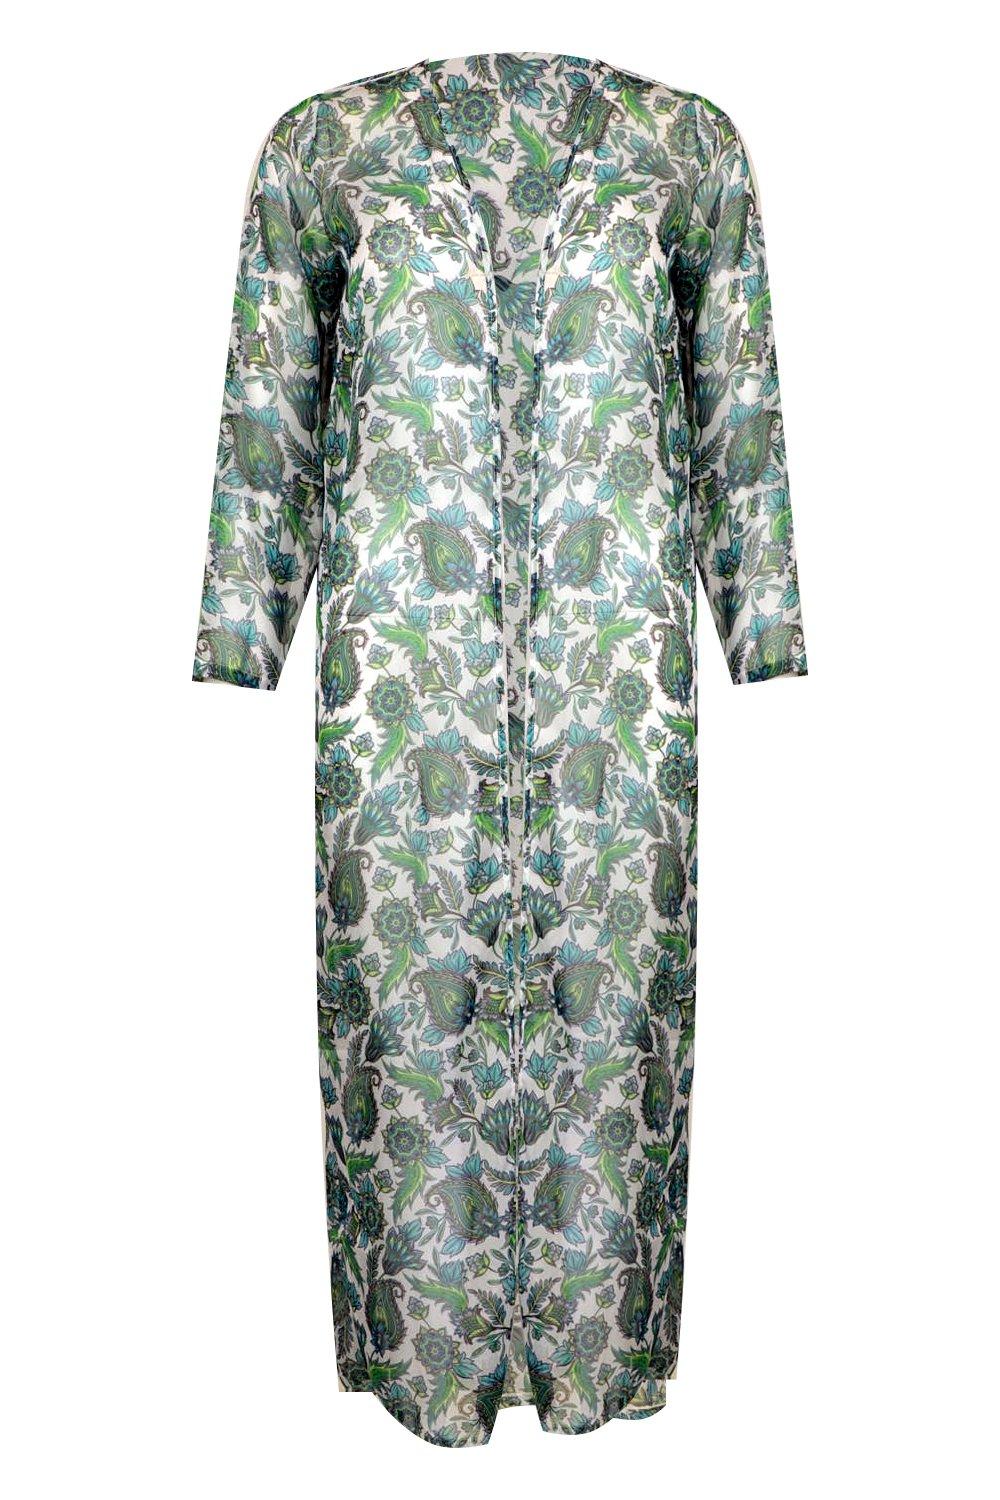 Boohoo Femme Vêtements Pulls & Gilets Gilets Kimonos Kimono De Plage En Mousseline De Soie À Imprimé Cachemire 